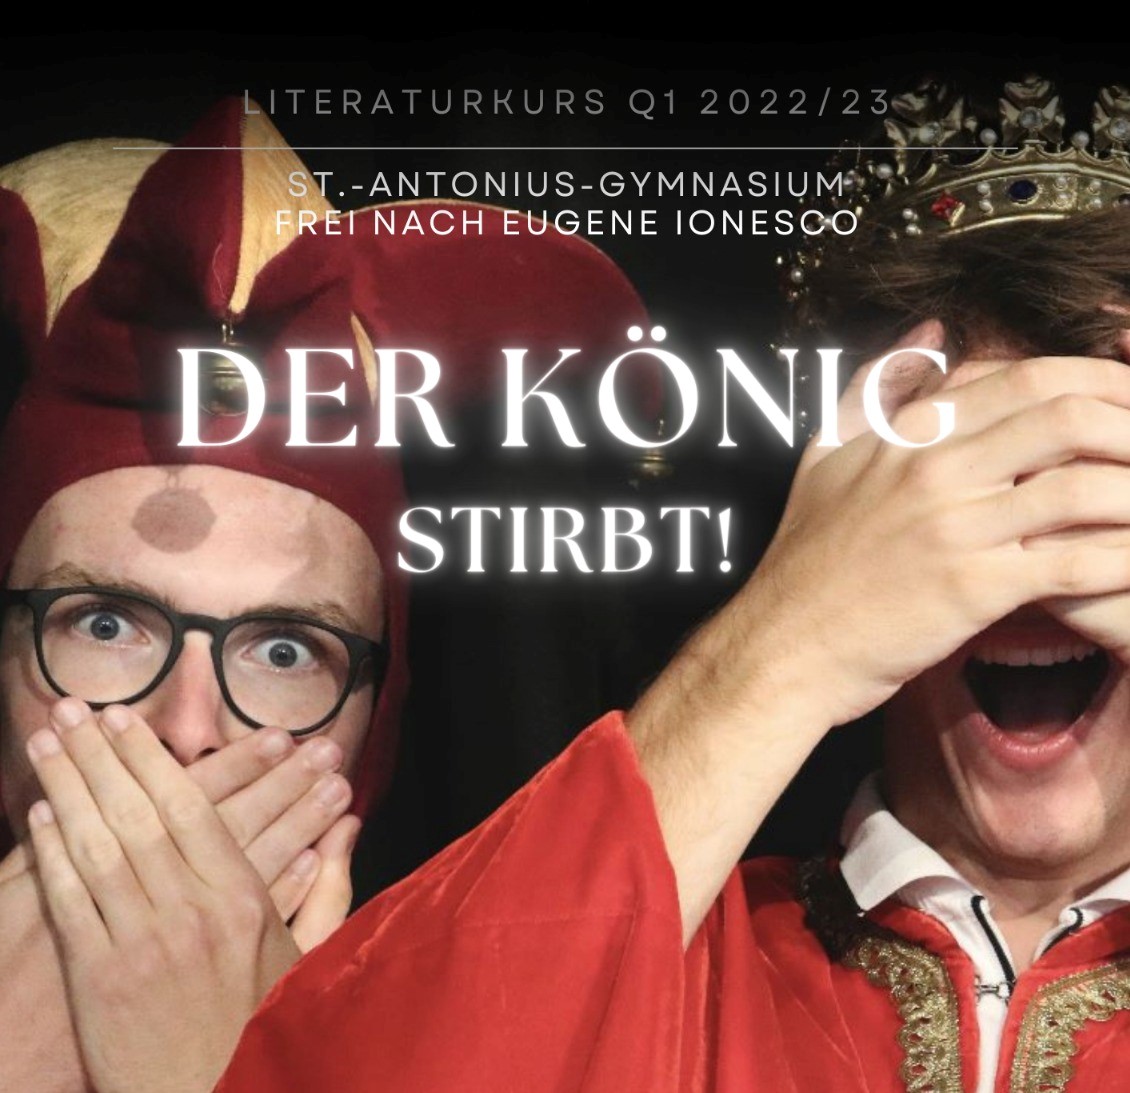 Der Literaturkurs 22-23 des St.-Antonius-Gymnasiums Lüdinghausen präsentiert:„Der König stirbt!“, frei nach Eugene Ionesco